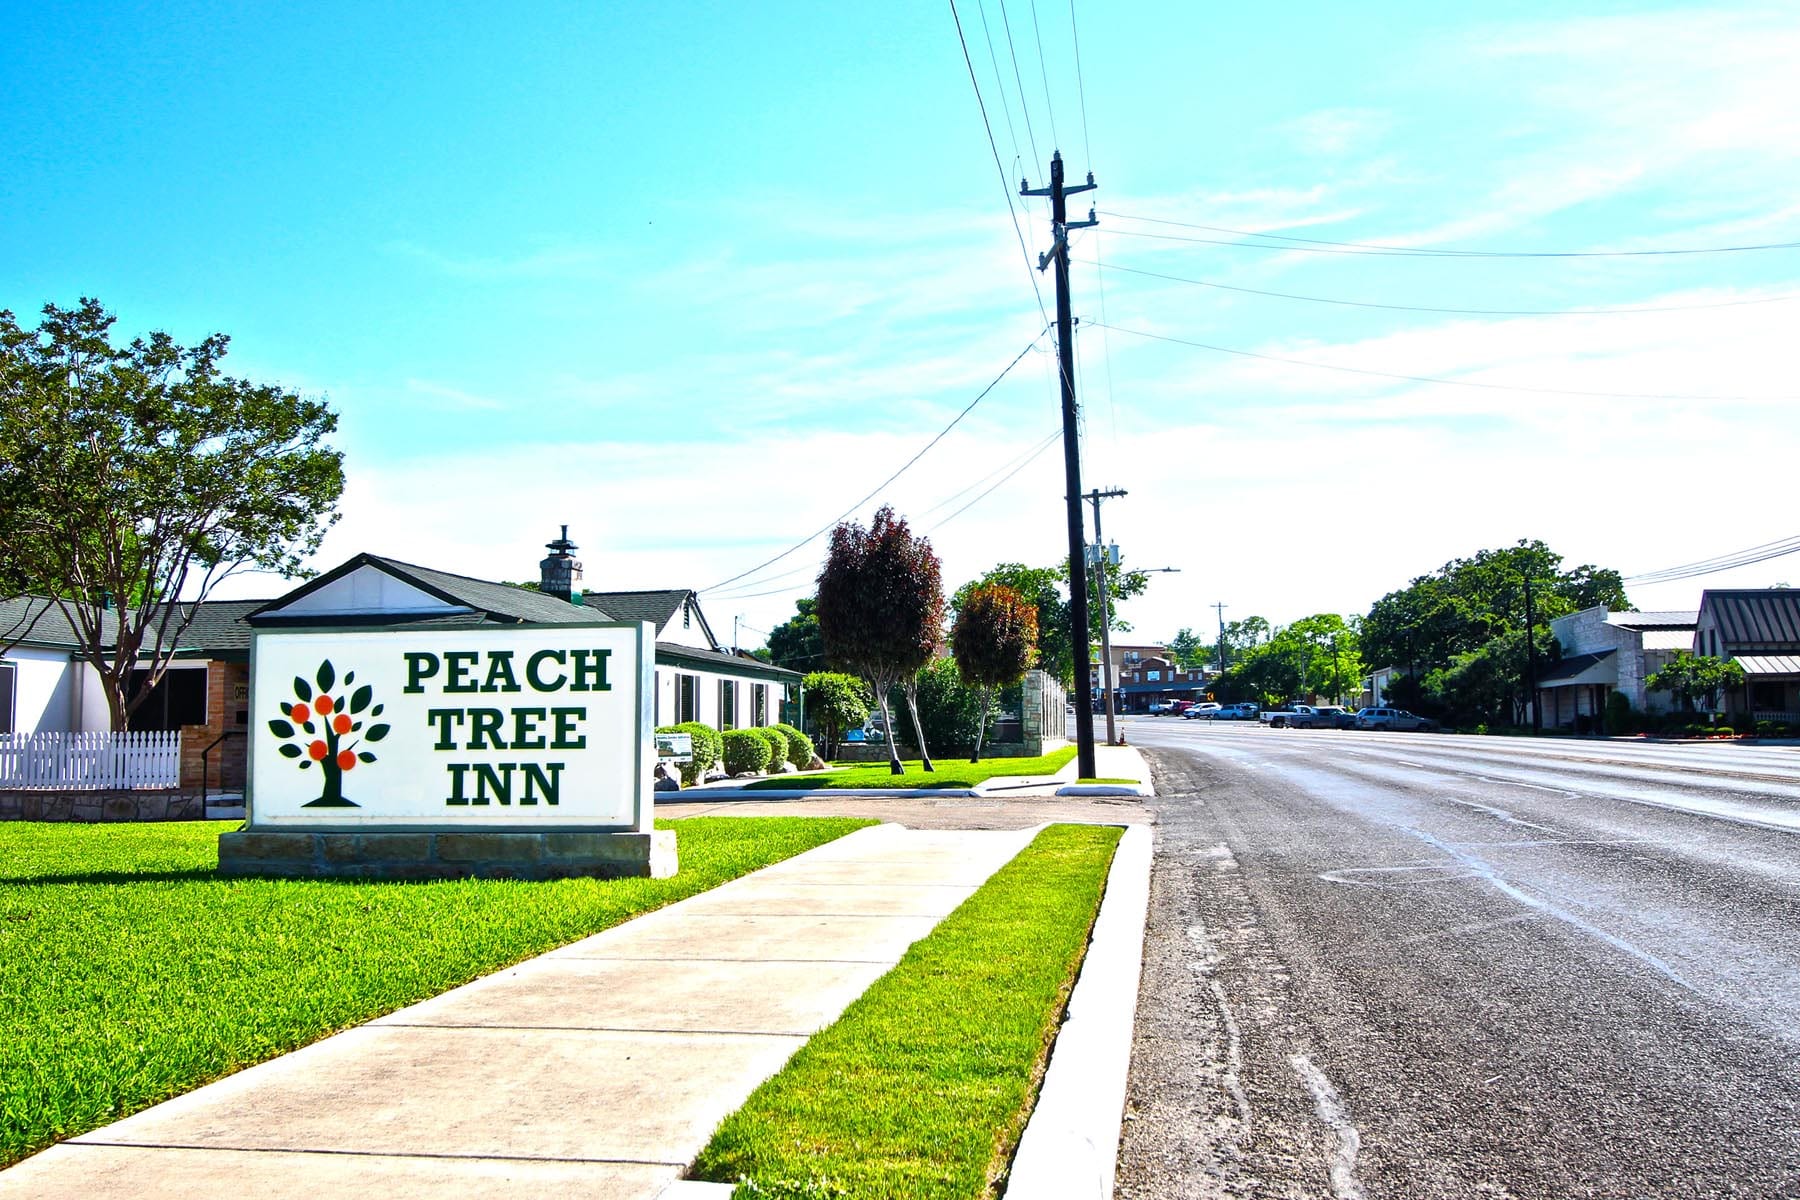 Peach Tree Inn sign near road.